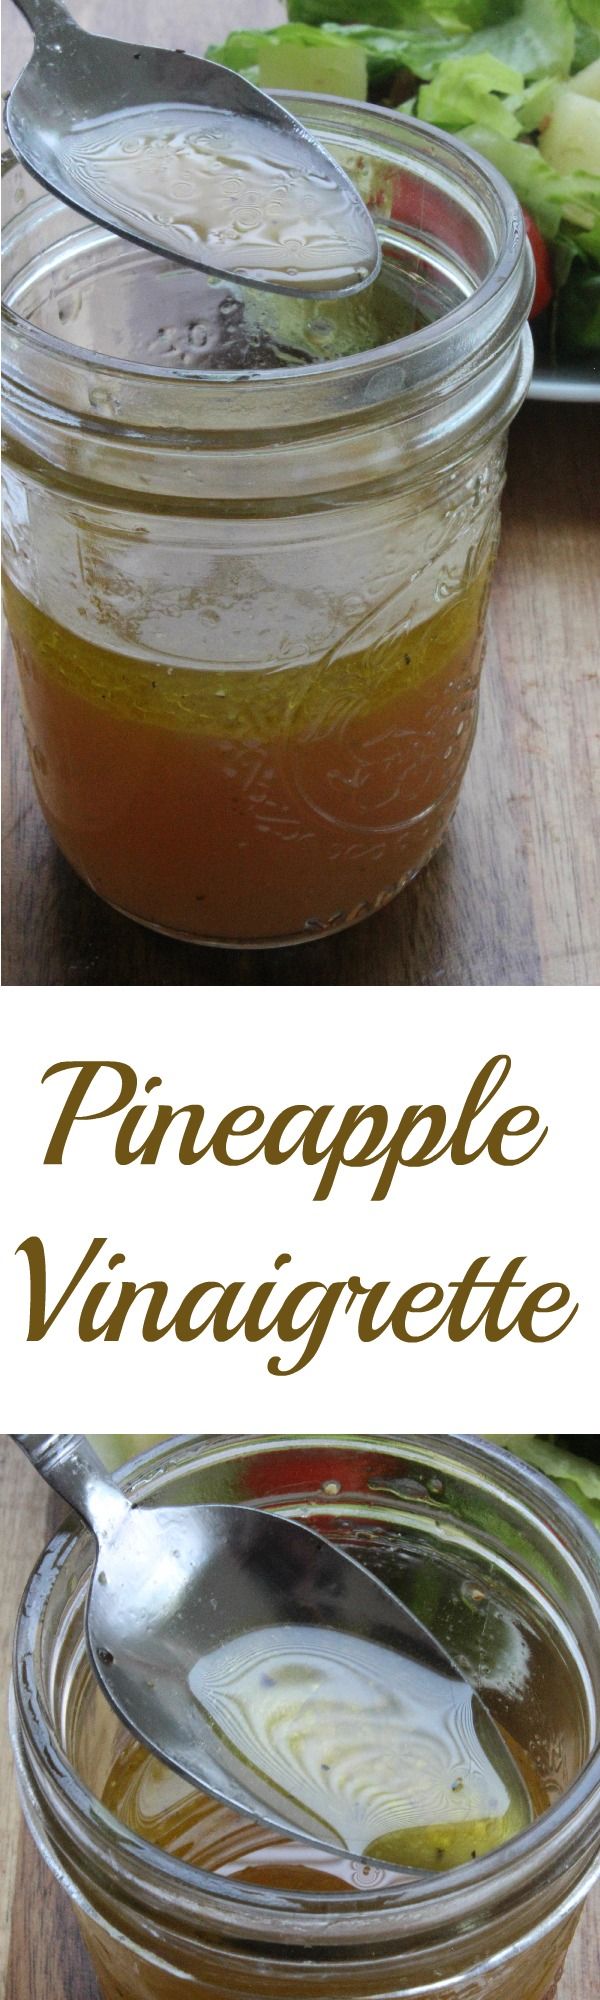 Pineapple Vinaigrette